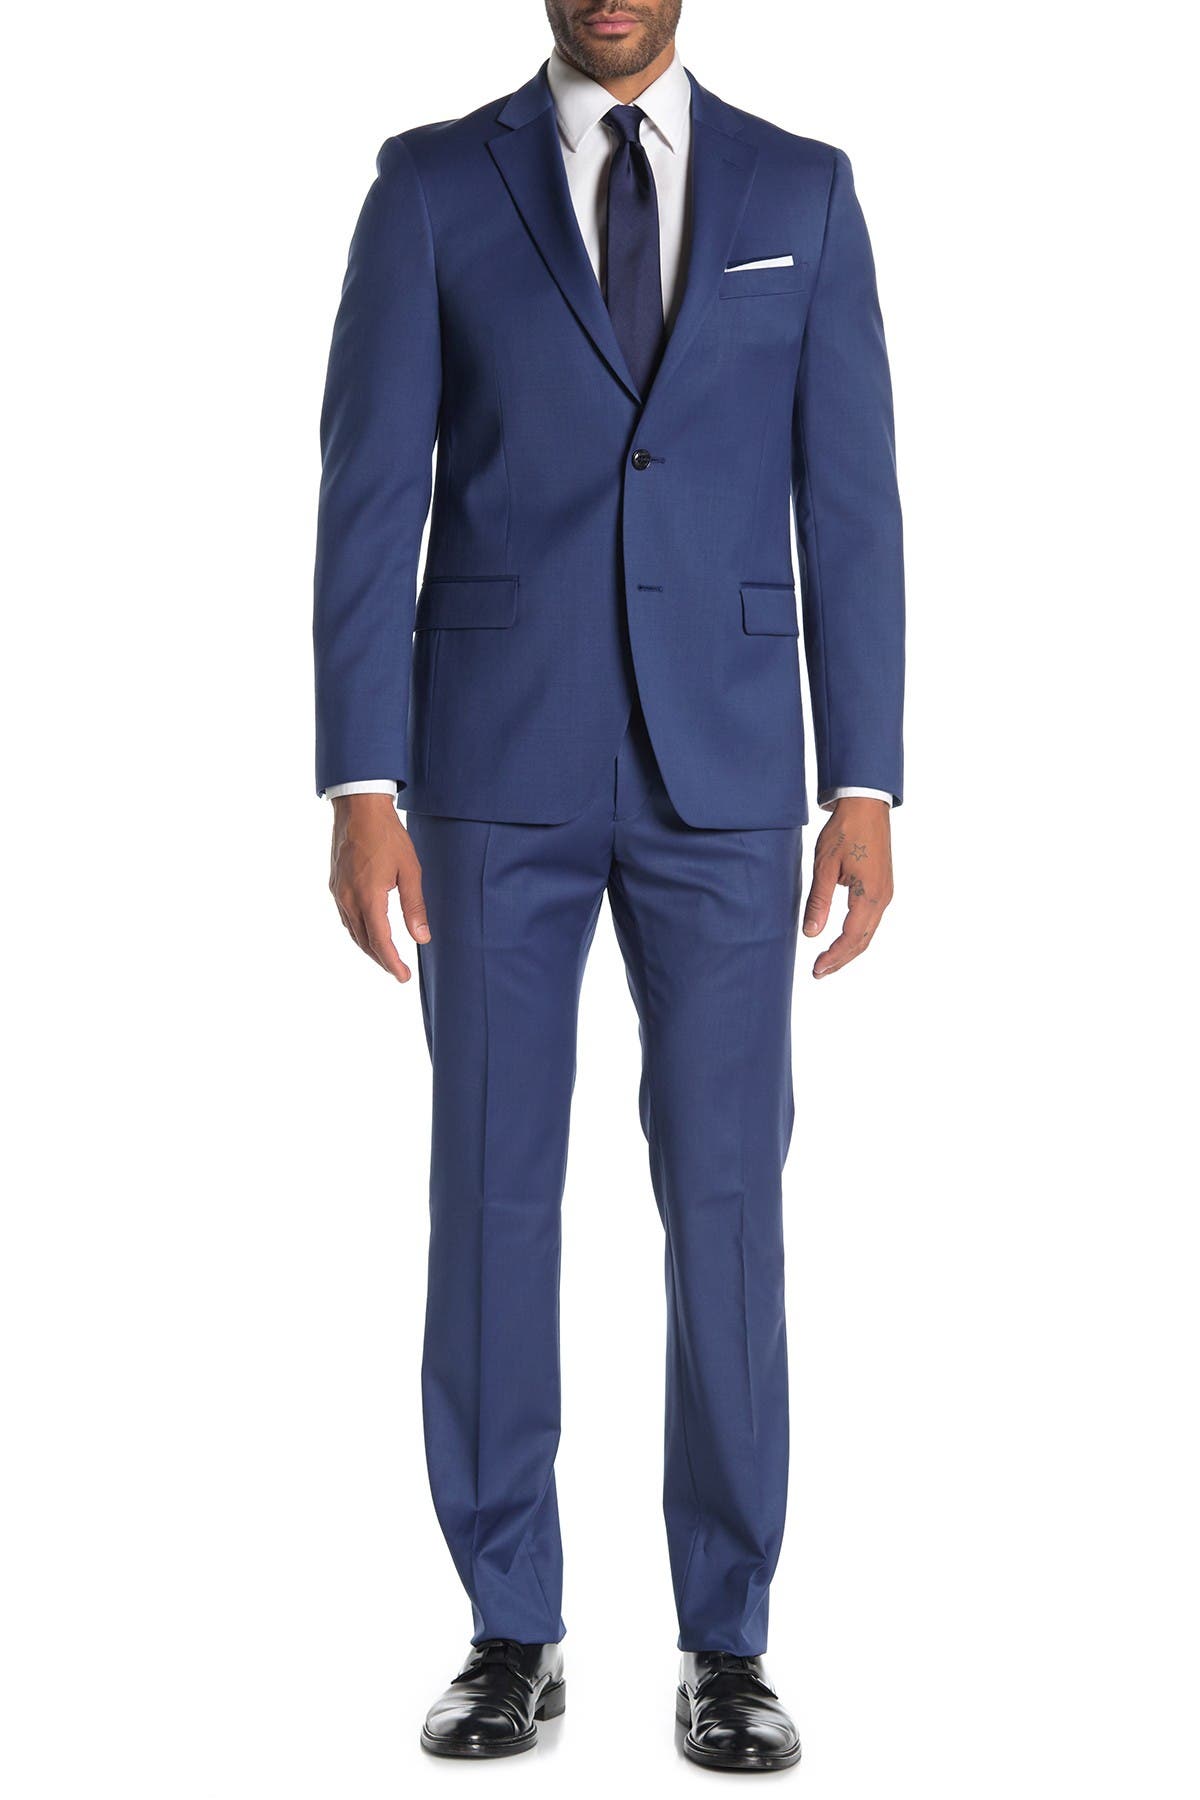 hilfiger suit